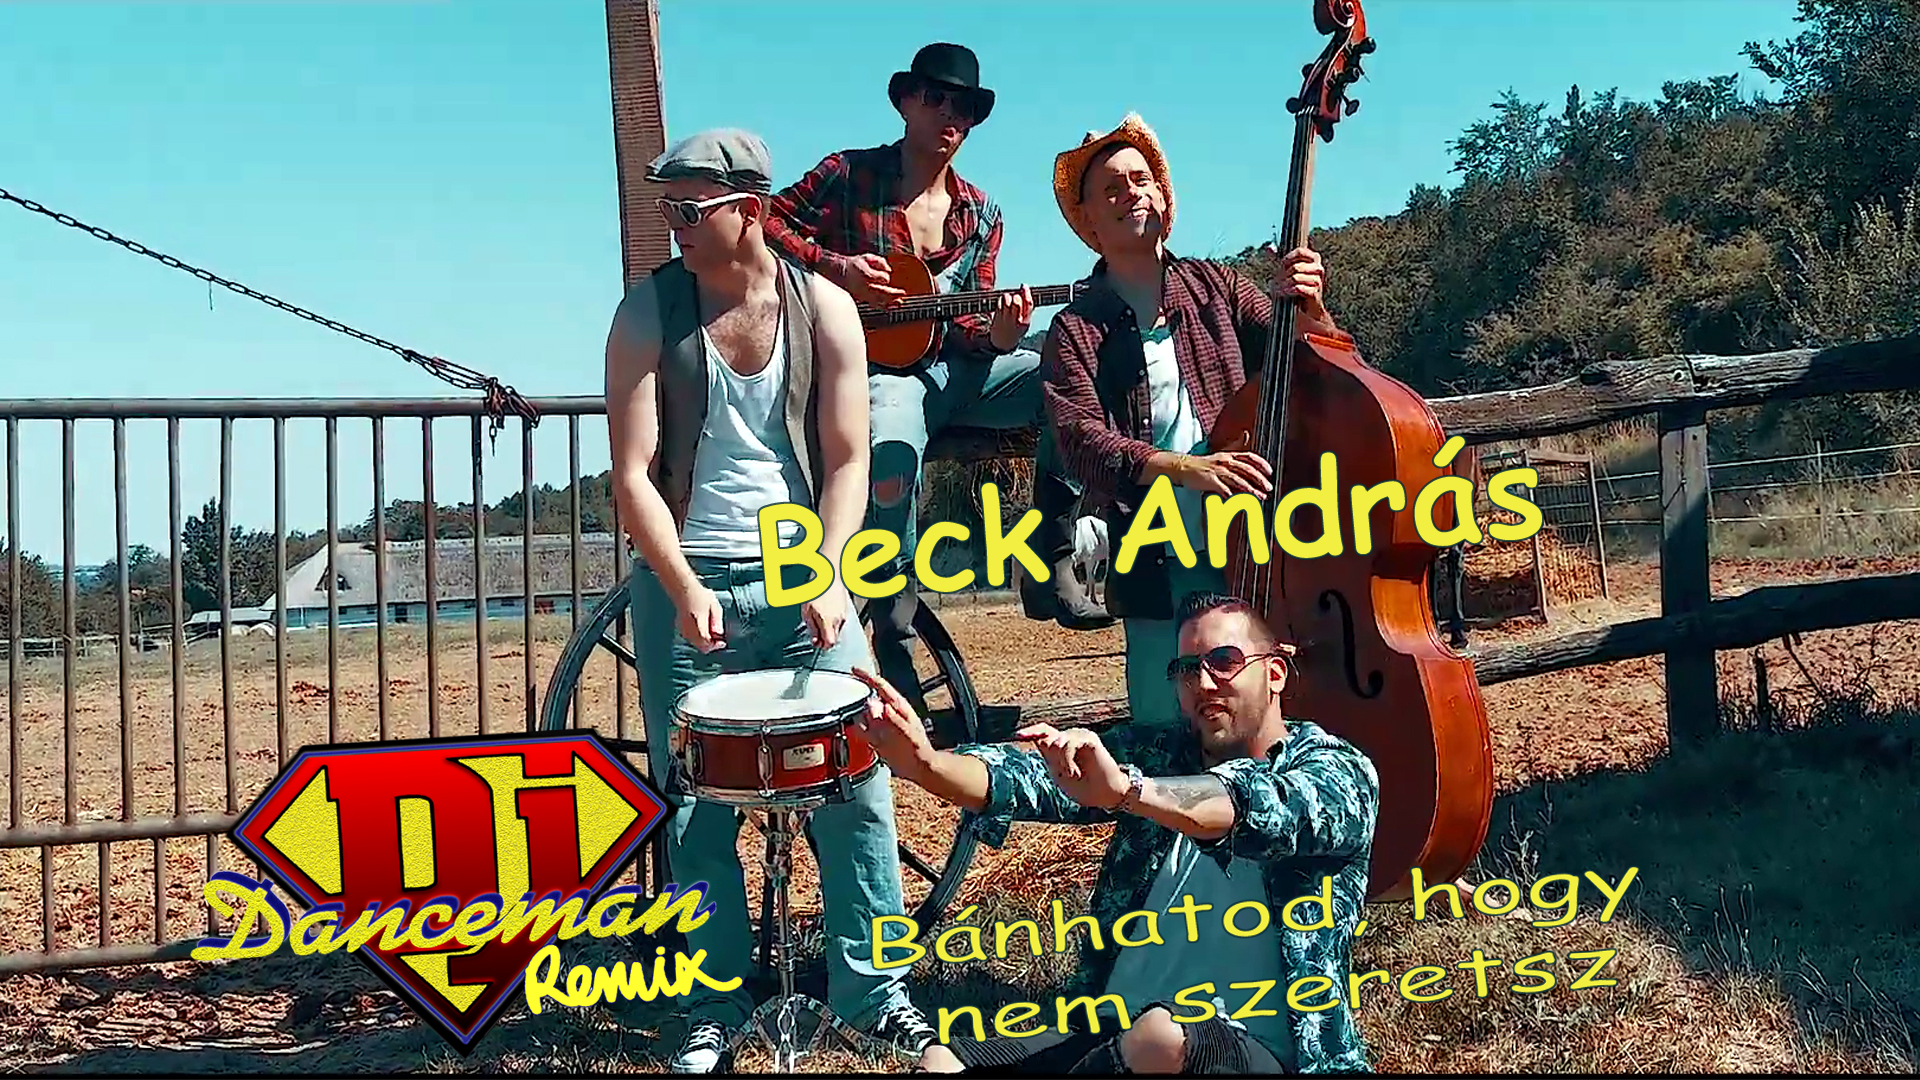 Beck András - Bánhatod, hogy nem szeretsz (Dj Danceman Remix Video Edit)